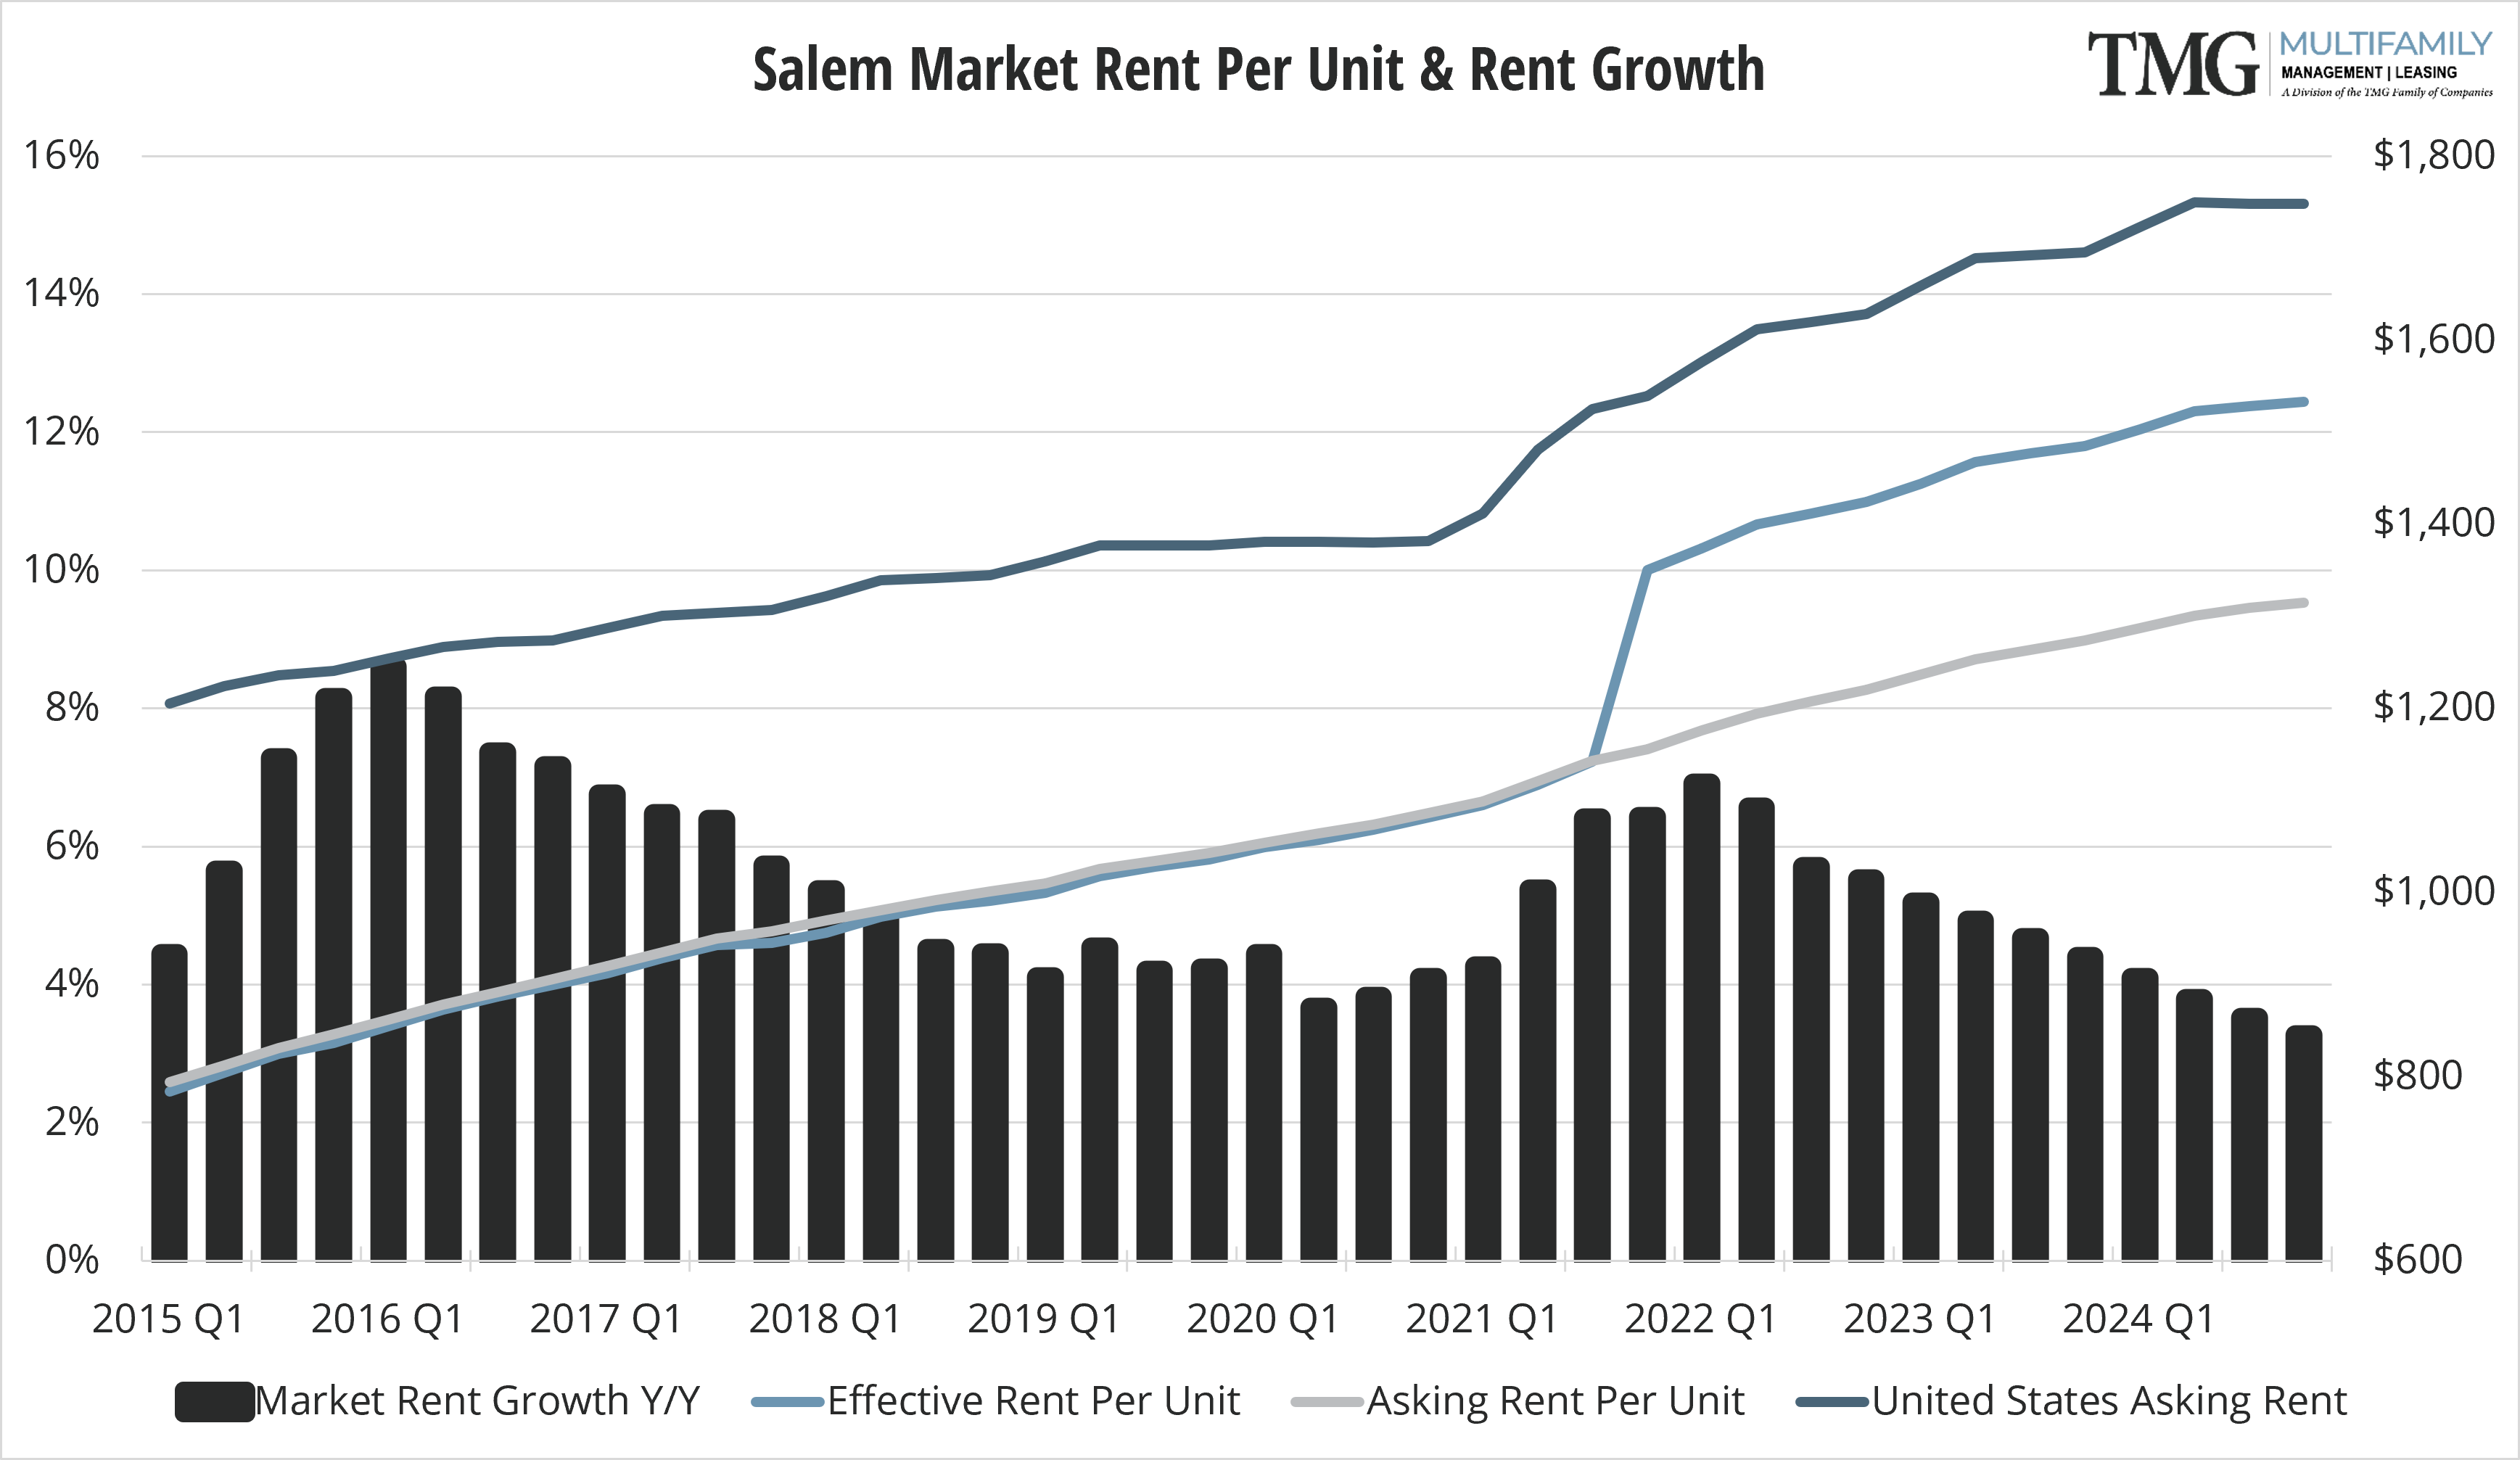 Salem Q4 Market Rent Per Unit and Rent Growth